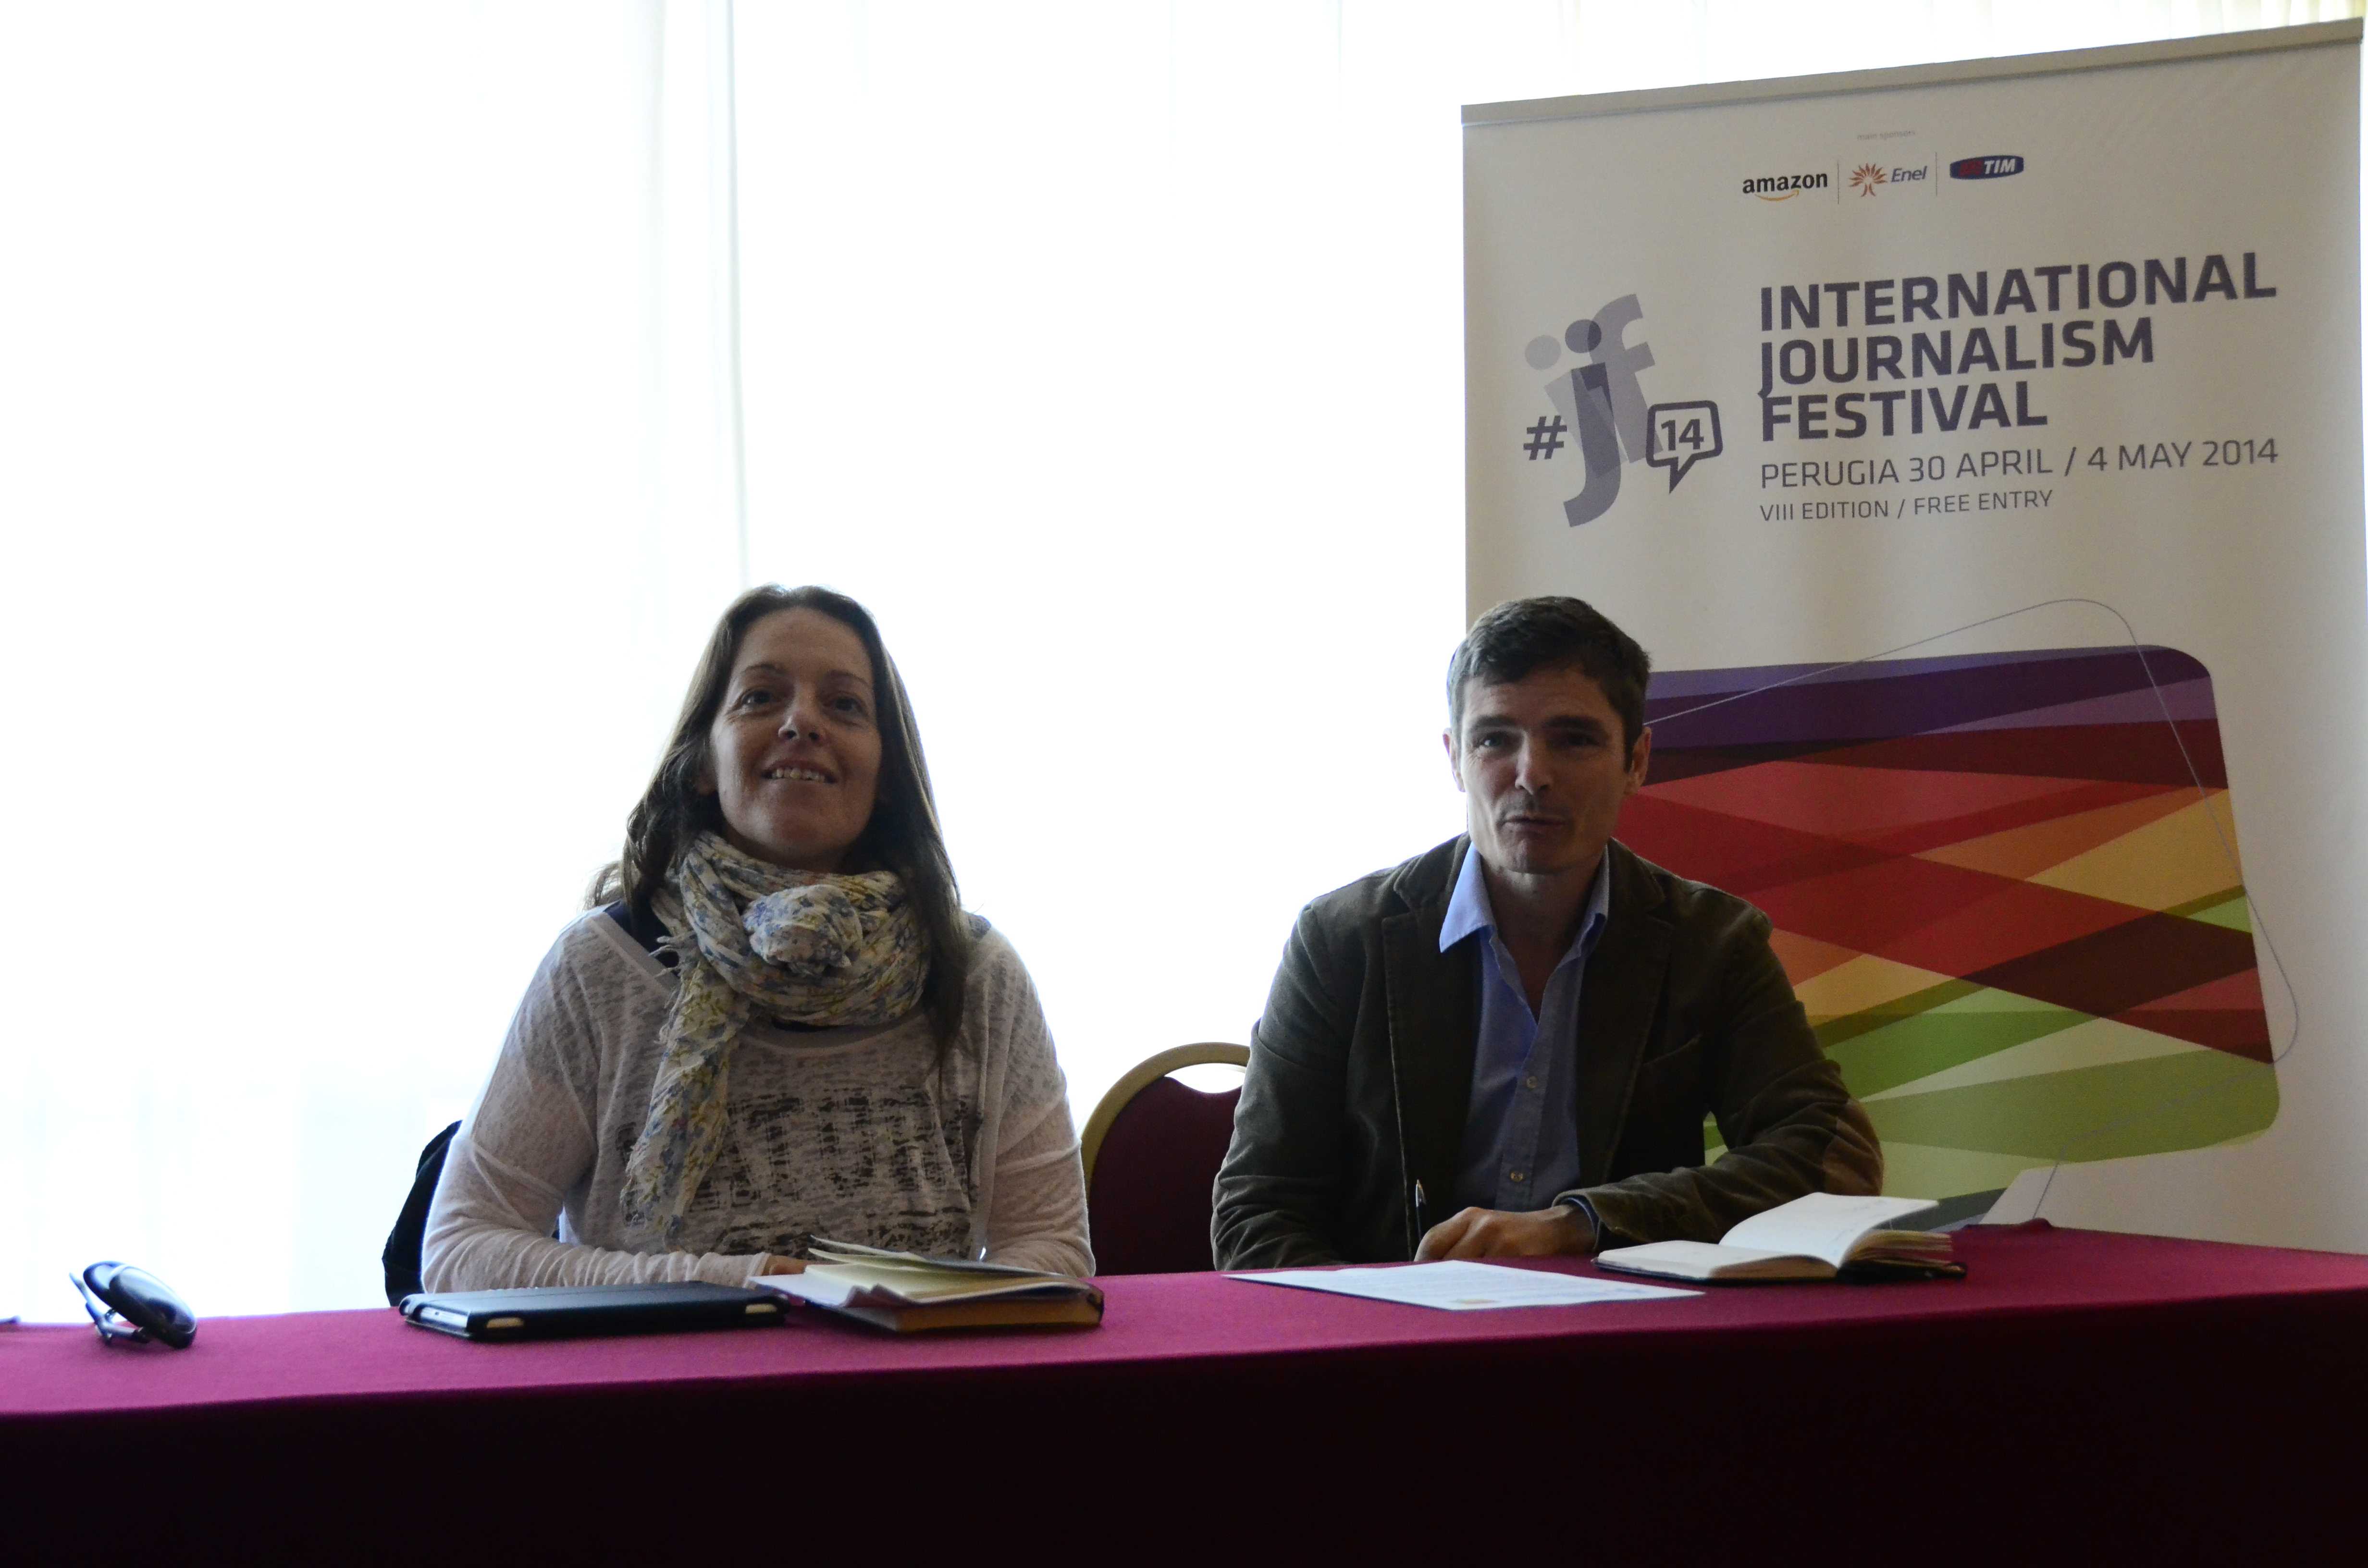 Festival Internazionale del Giornalismo 2014, l'edizione dei record